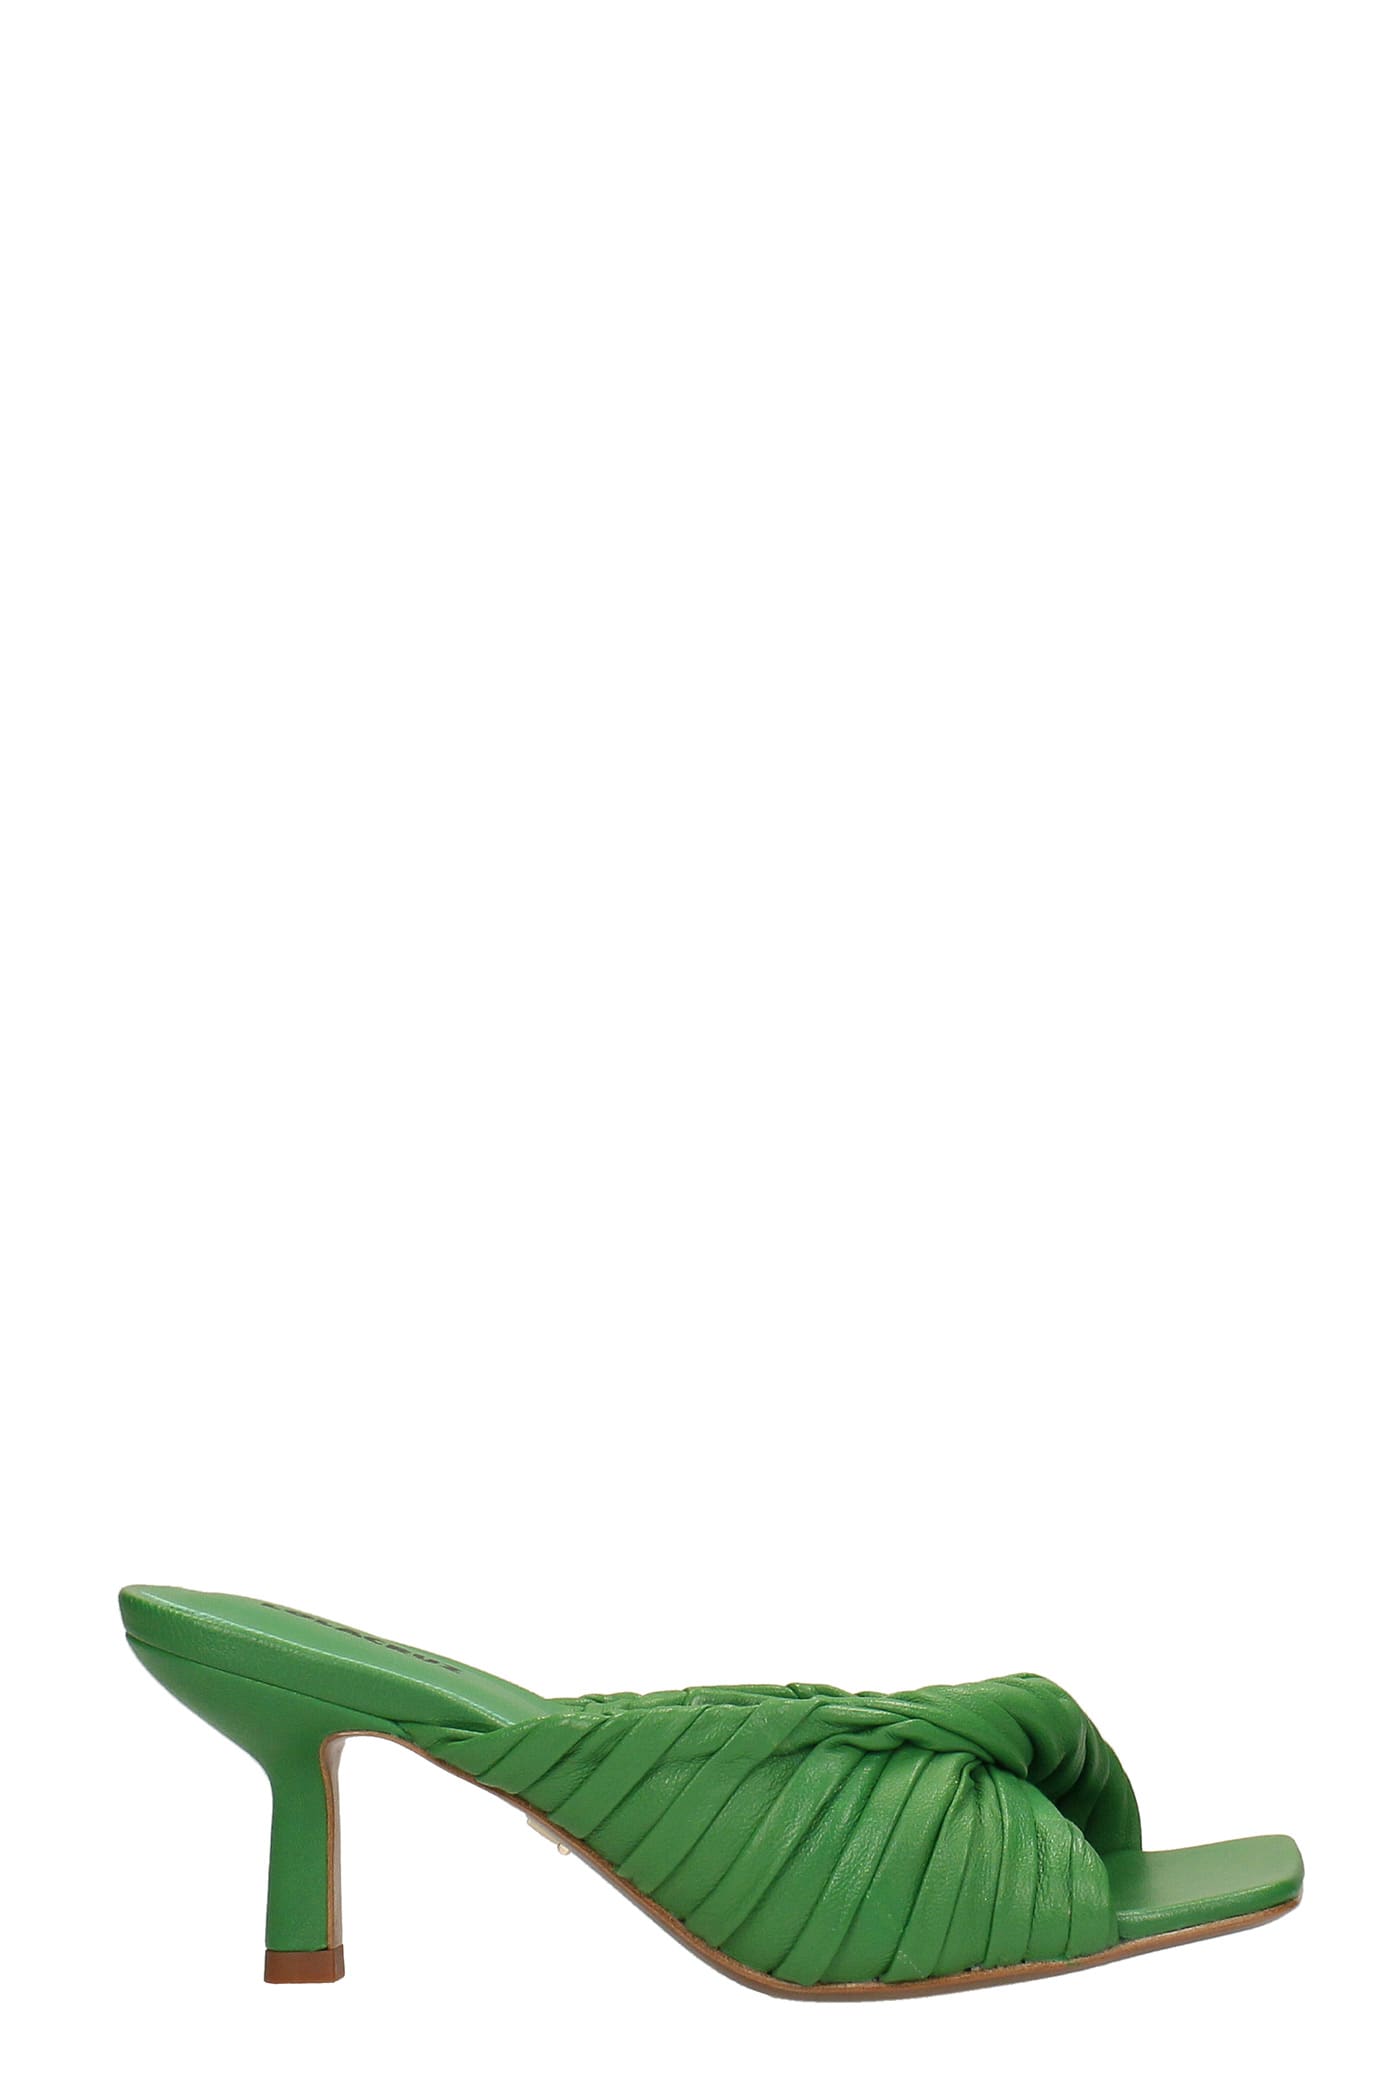 lola cruz slipper-mule in green leather